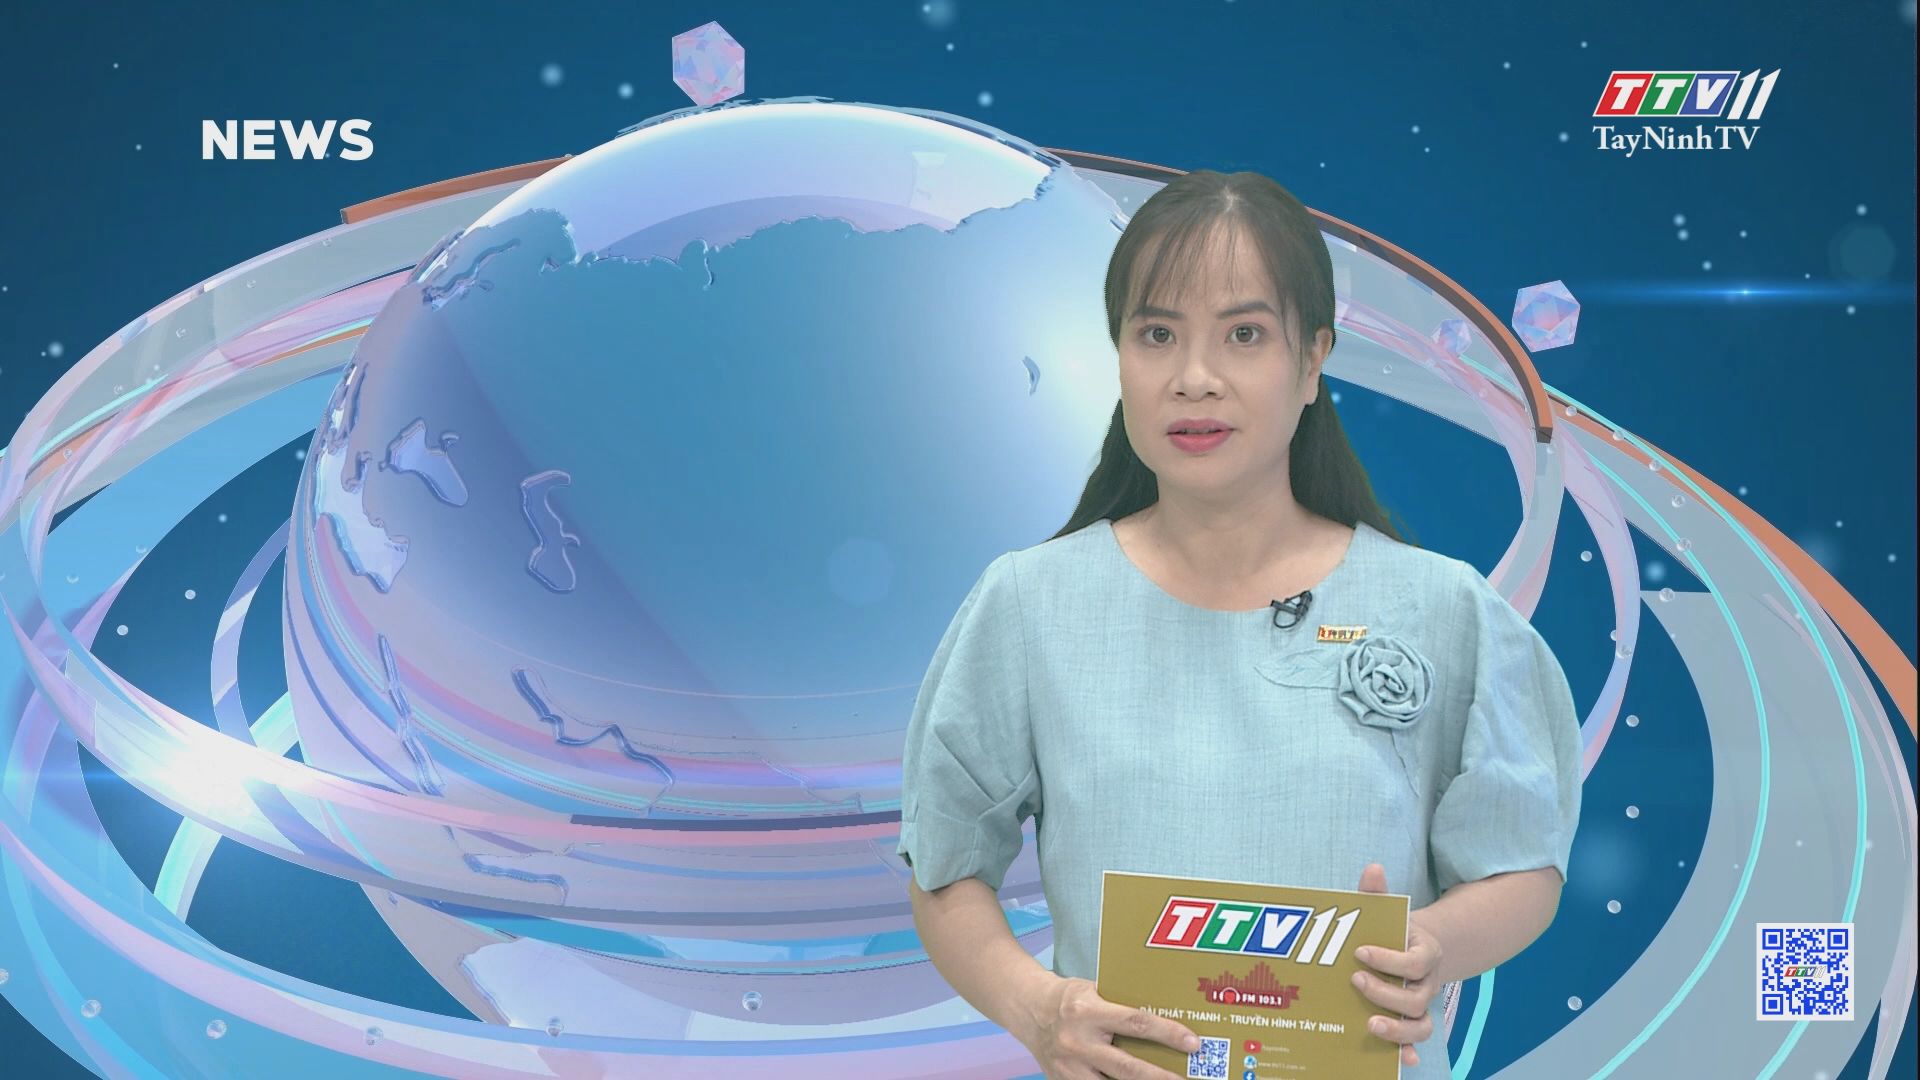 TTVNEWS 07-6-2021 | TayNinhTV Today